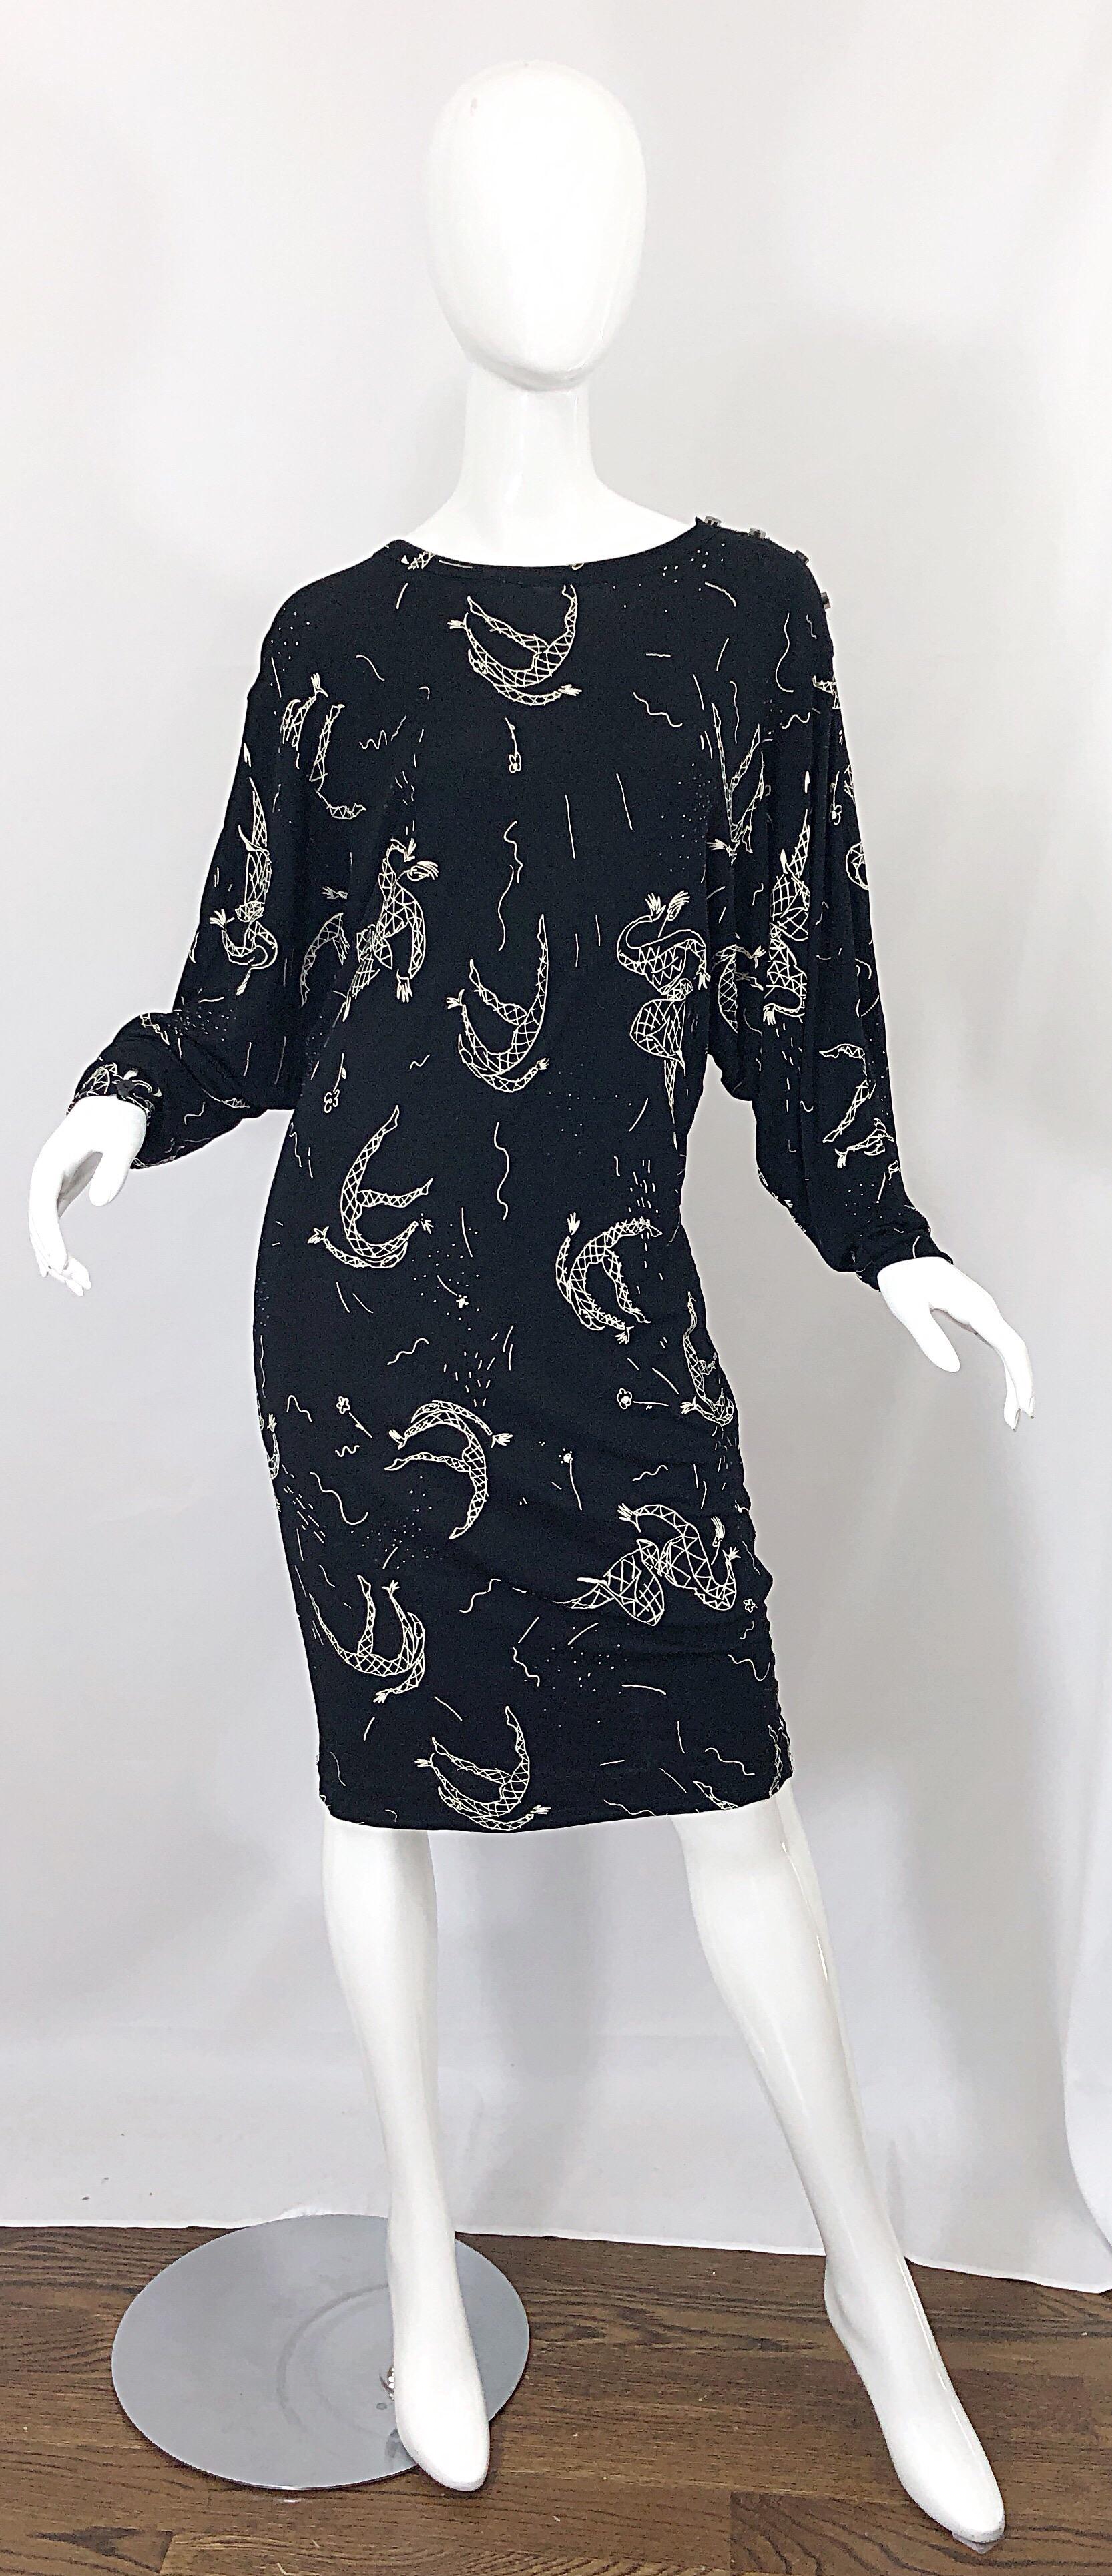 Außergewöhnliche Vintage Mitte der 1980er Jahre AMEN WARDY schwarz und weiß Hand gemalt Harlekin Neuheit Druck Jersey Kleid! Aus dehnbarem Rayon-Jersey und mit Dolman-Ärmeln, die sich an verschiedene Größen anpassen lassen. Knöpfe an der linken